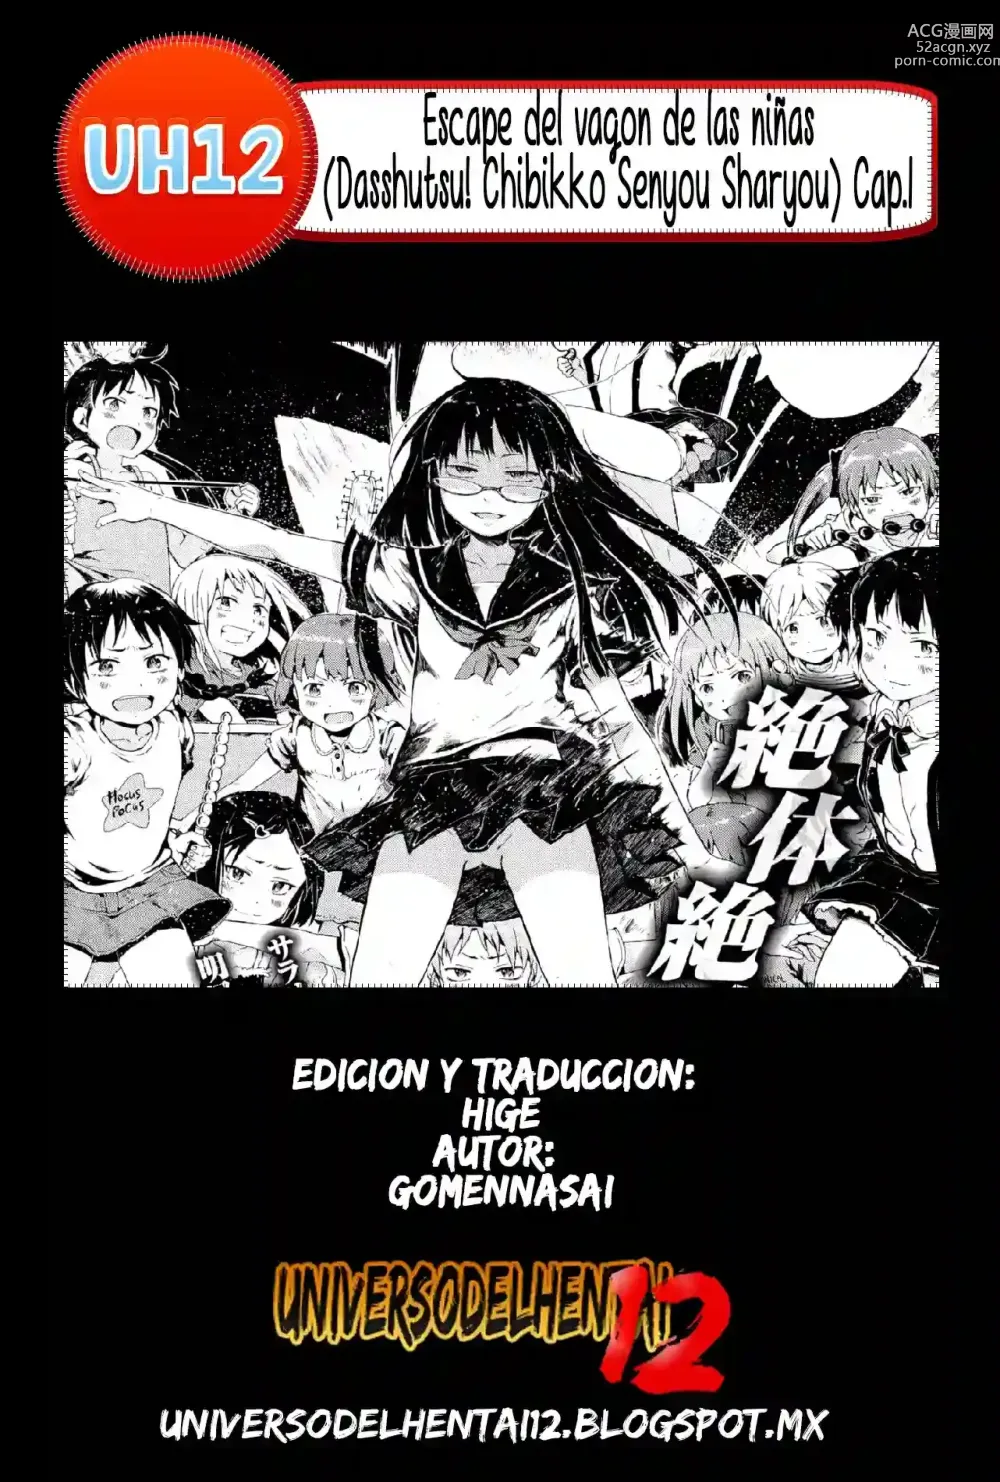 Page 23 of manga Escape del vagon de las niñas Cap.1